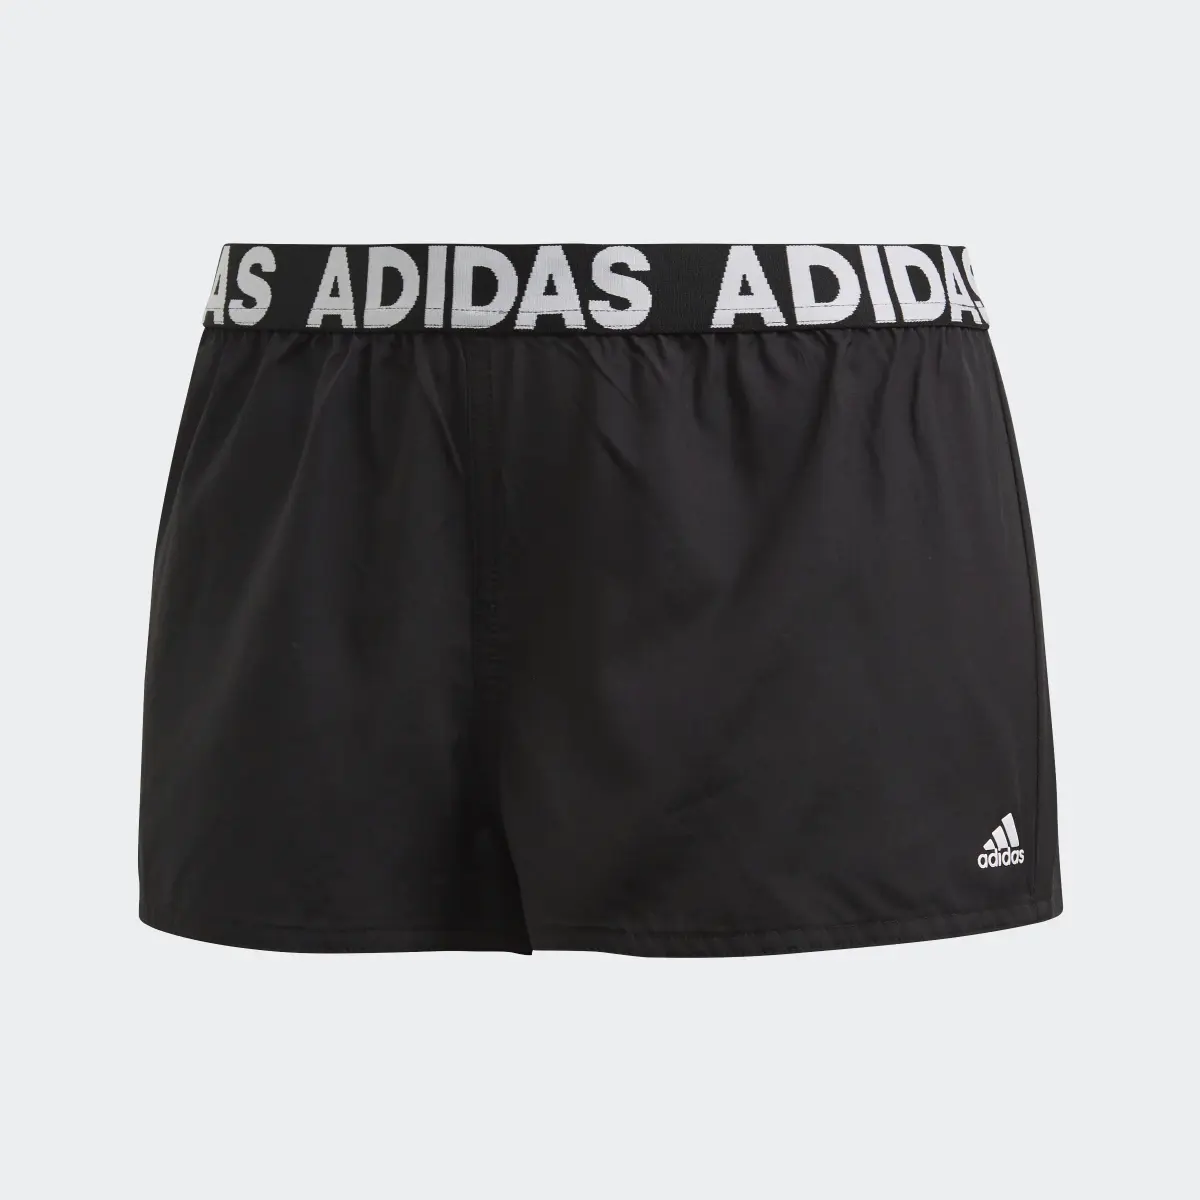 Adidas Beach Shorts. 1